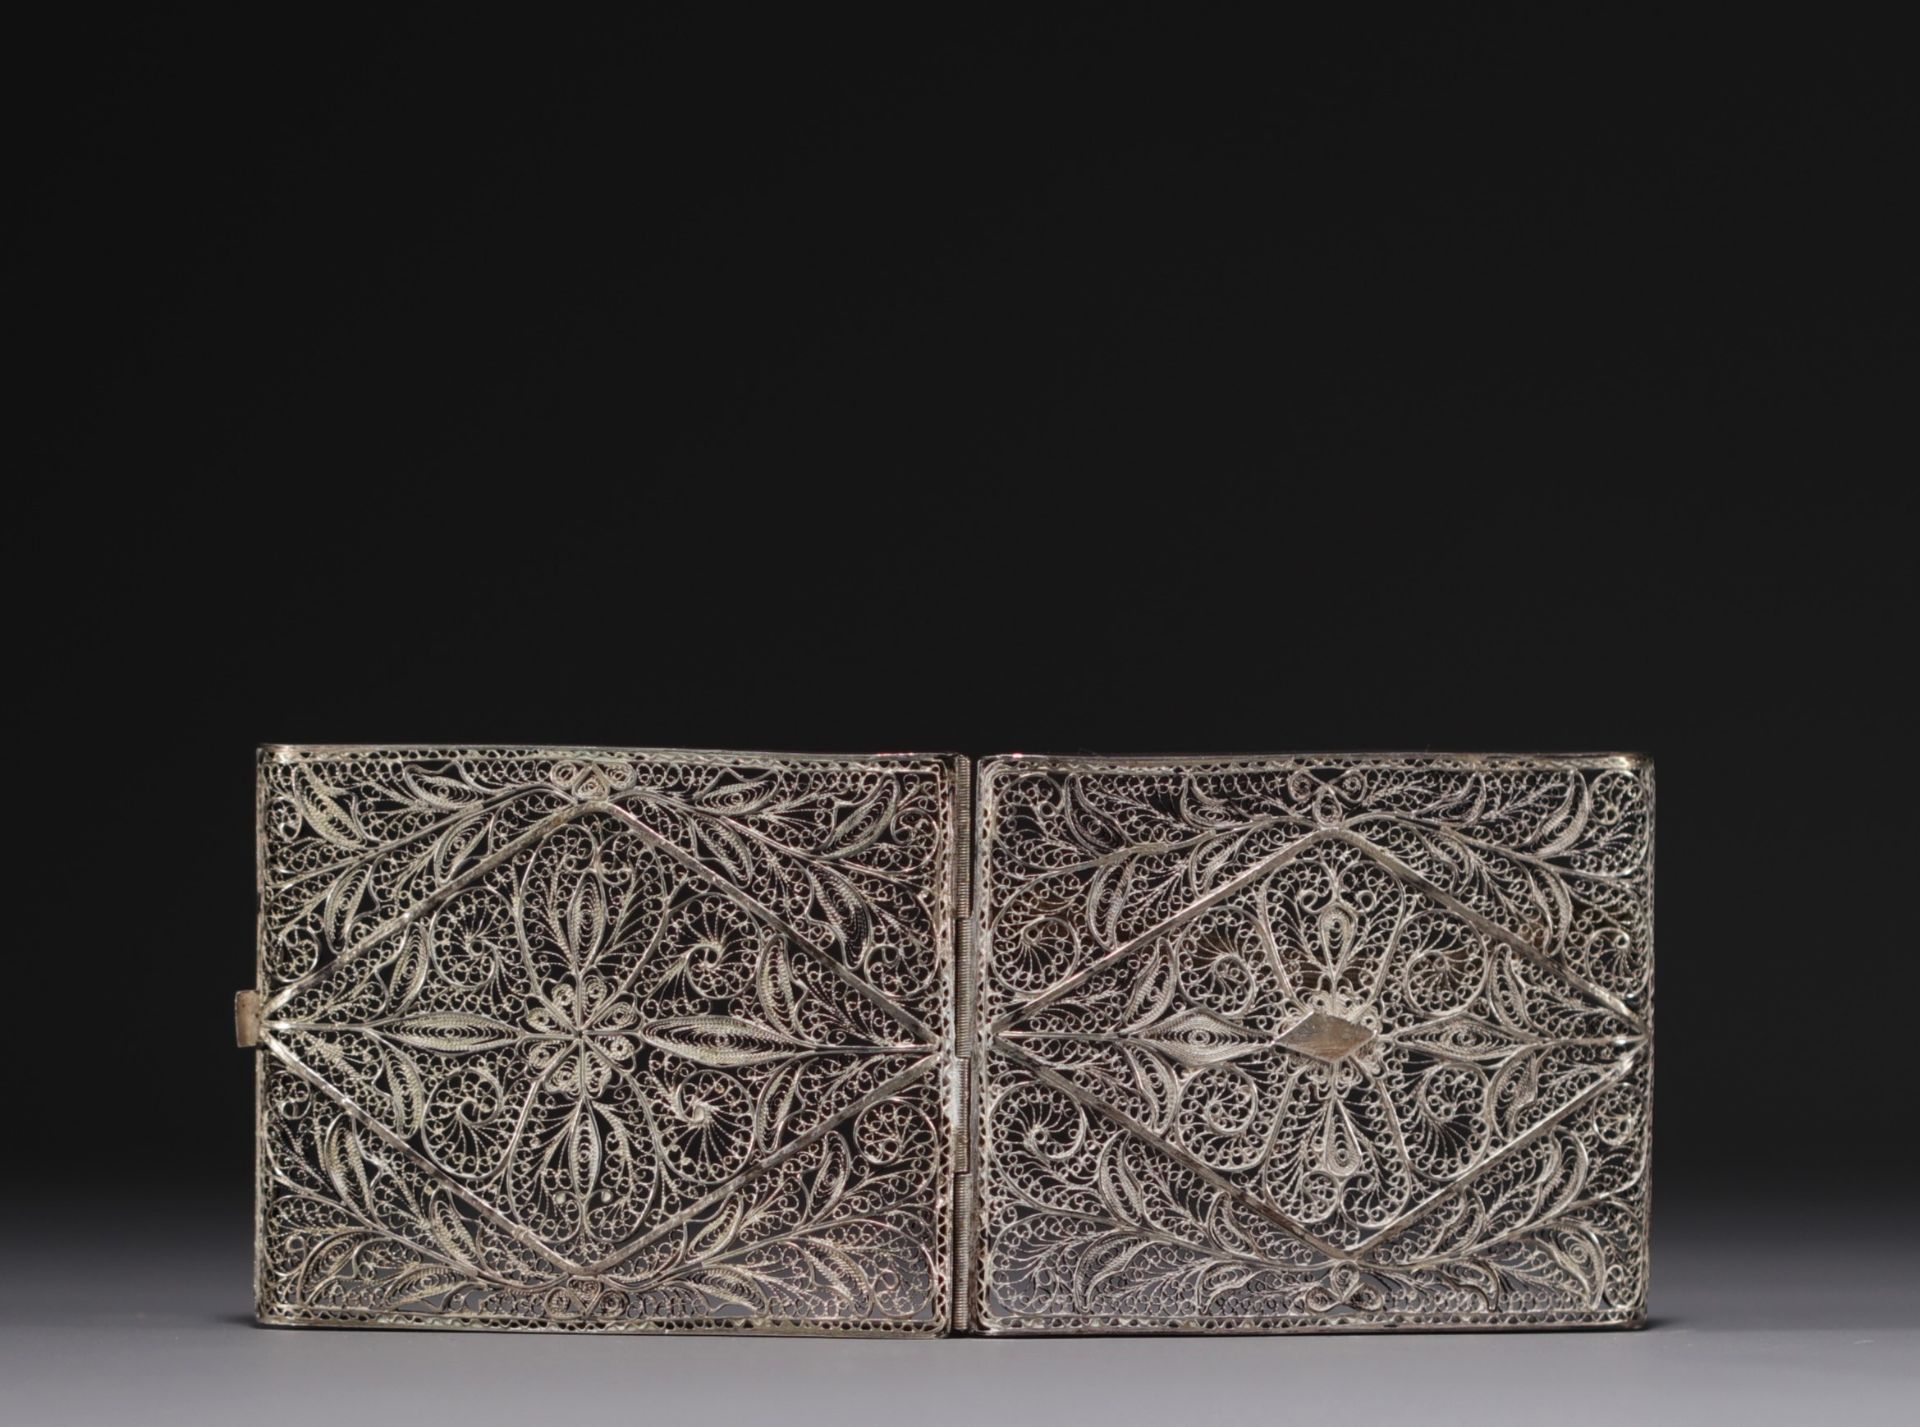 Ottoman Art - Filigree silver cigarette case, late 19th century. - Bild 2 aus 3